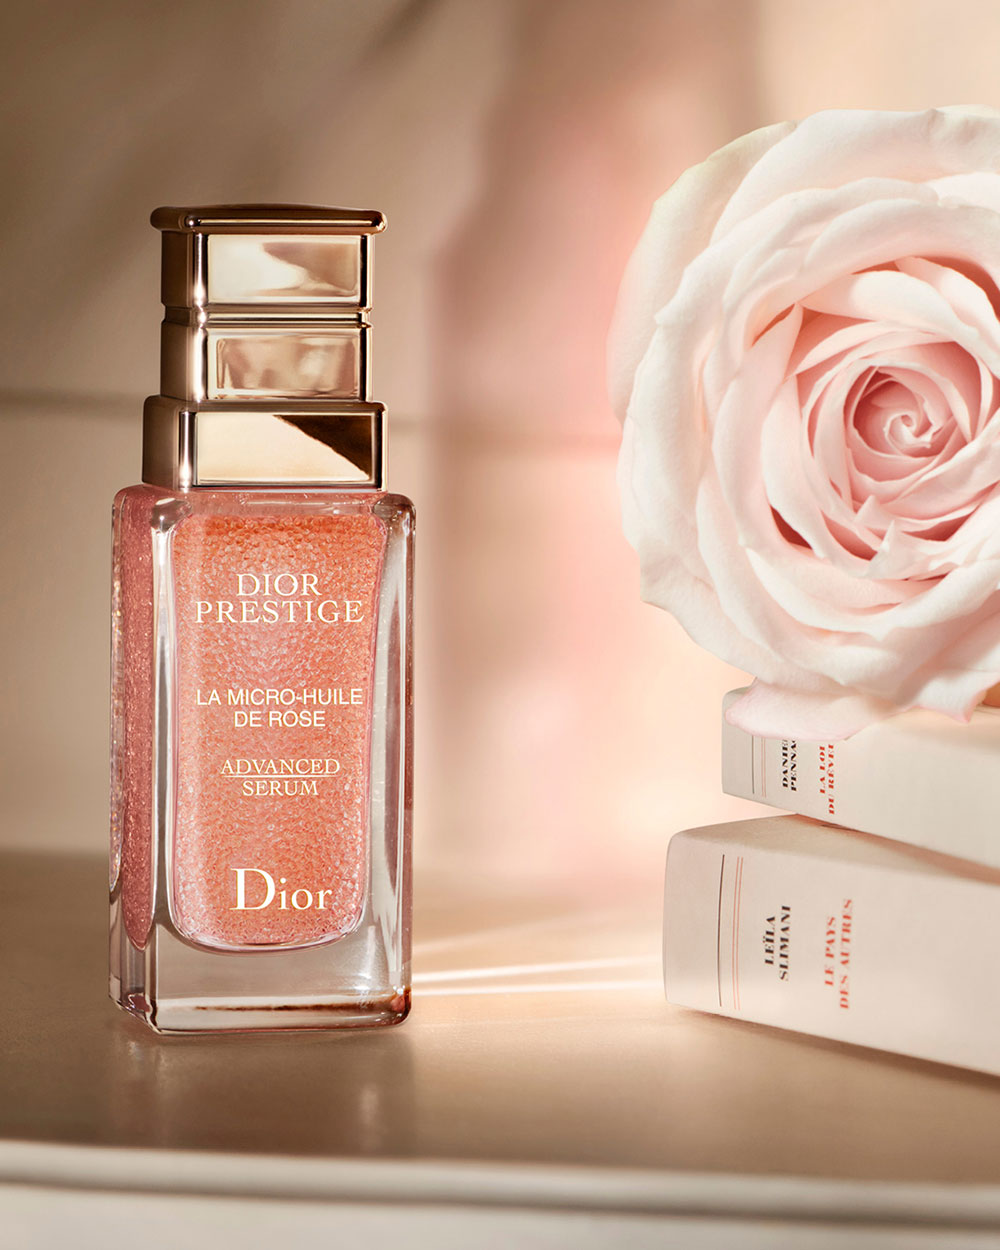 Tinh chất Dior Prestige La Micro Huile de Rose: "thực phẩm chức năng" chống lão hóa da